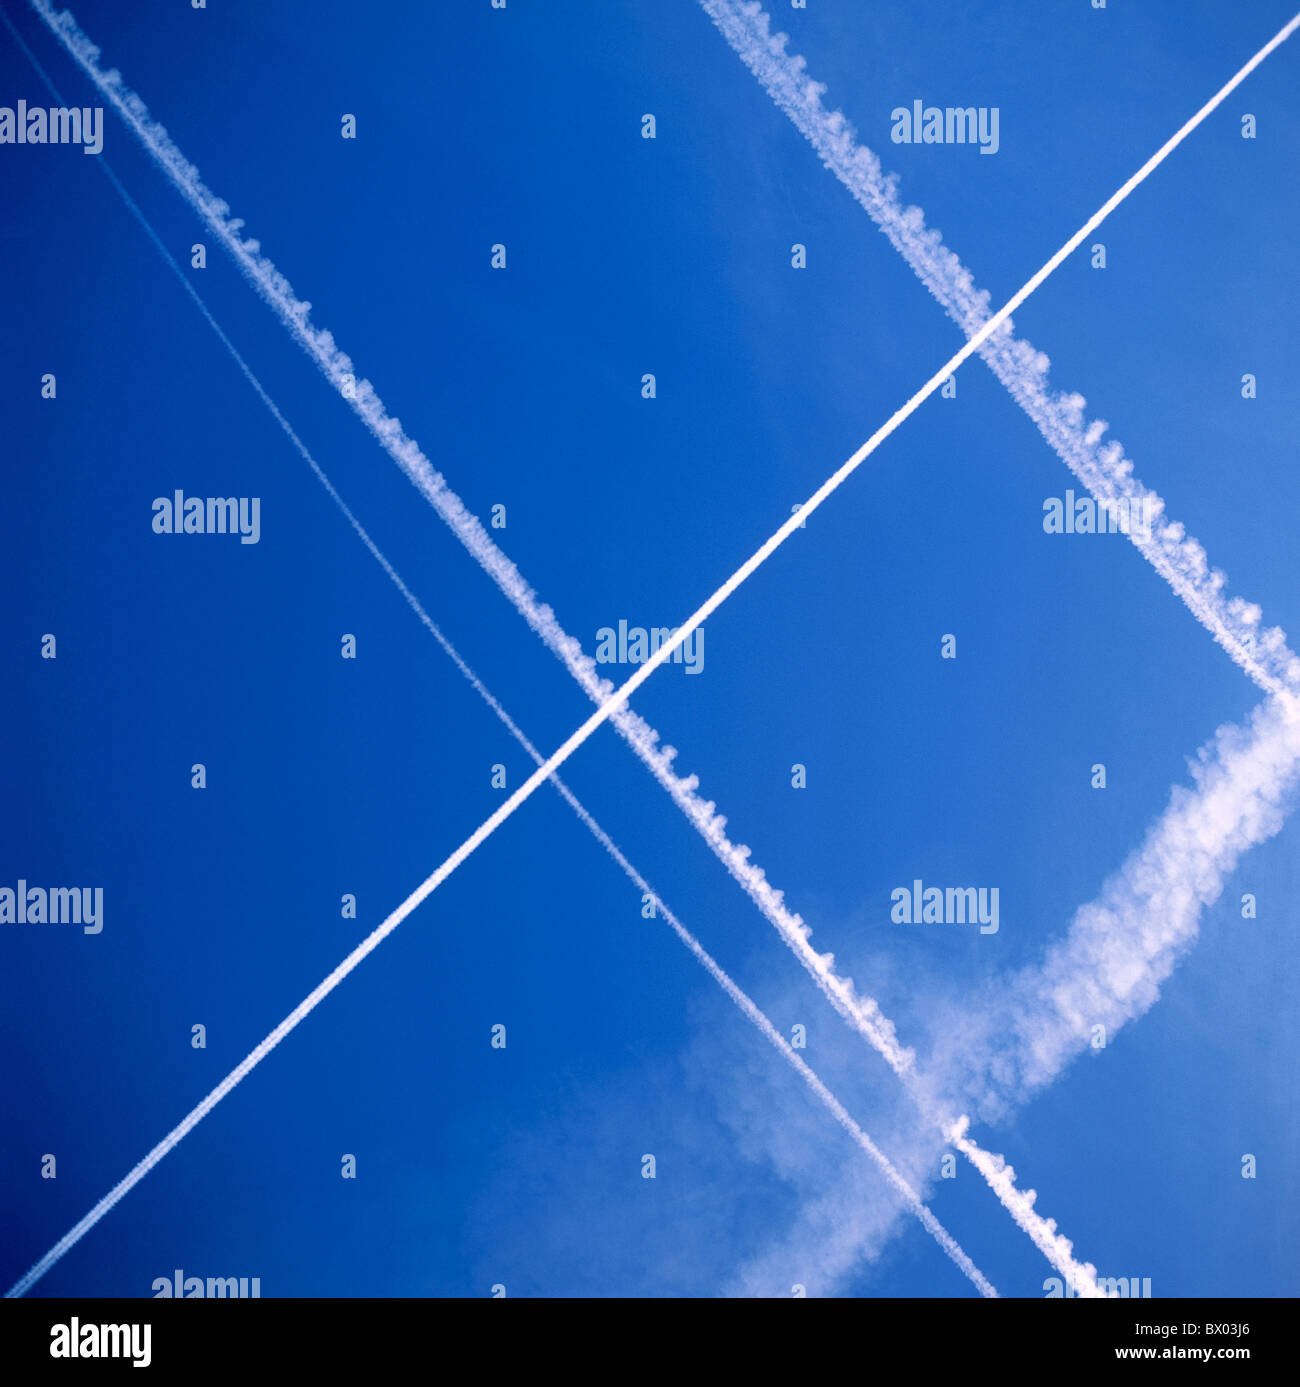 Transversalmente las estelas de condensación de nubes símbolo del tráfico aéreo weather Foto de stock